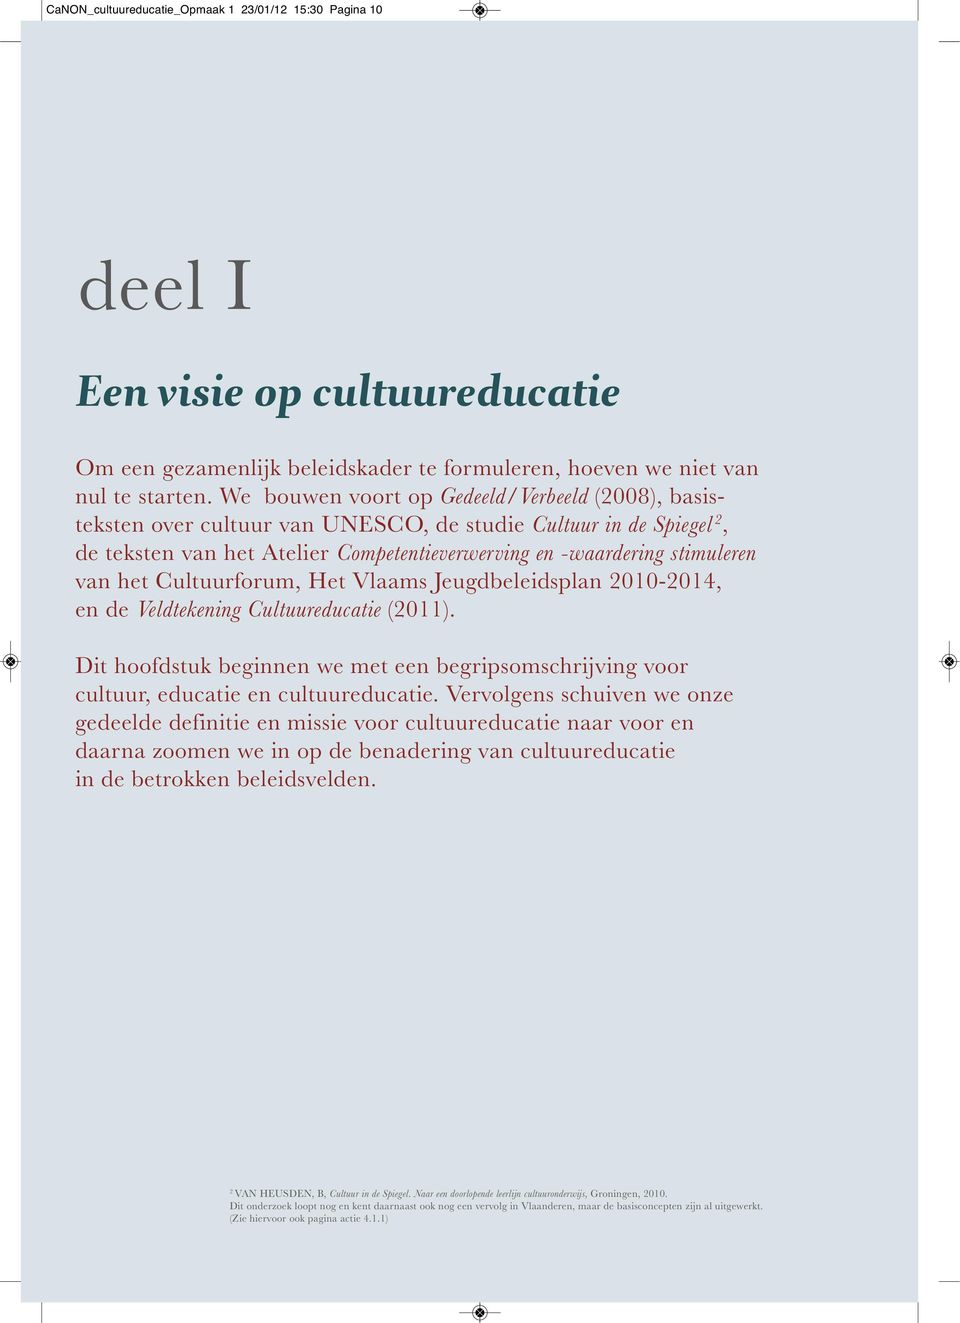 Cultuurforum, Het Vlaams Jeugdbeleidsplan 2010-2014, en de Veldtekening Cultuureducatie (2011). Dit hoofdstuk beginnen we met een begripsomschrijving voor cultuur, educatie en cultuureducatie.